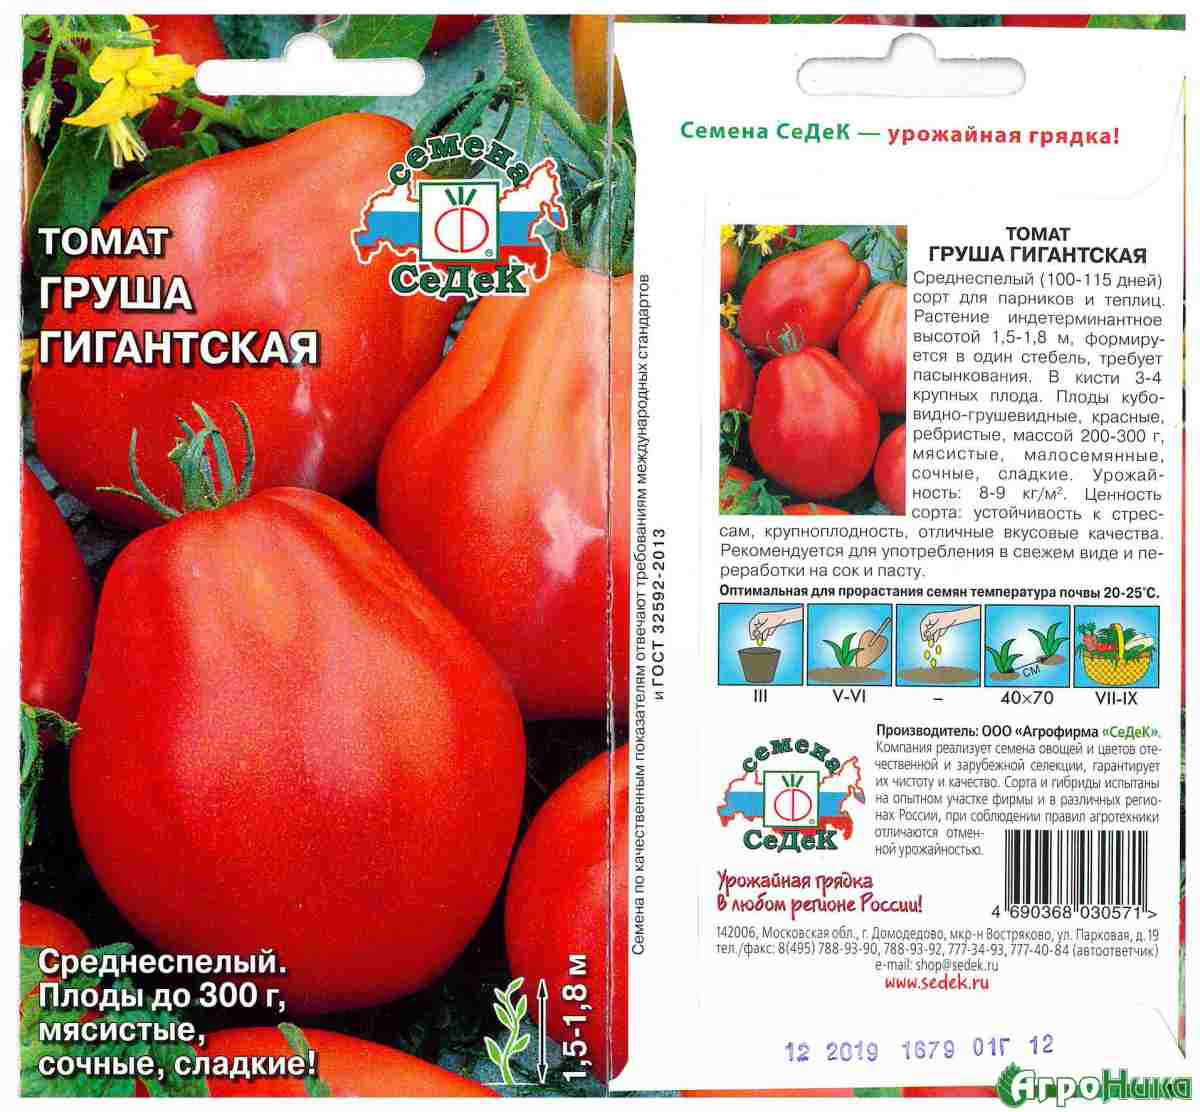 Томат "желтая груша": описание сорта, характеристики плода, рекомендации по уходу русский фермер